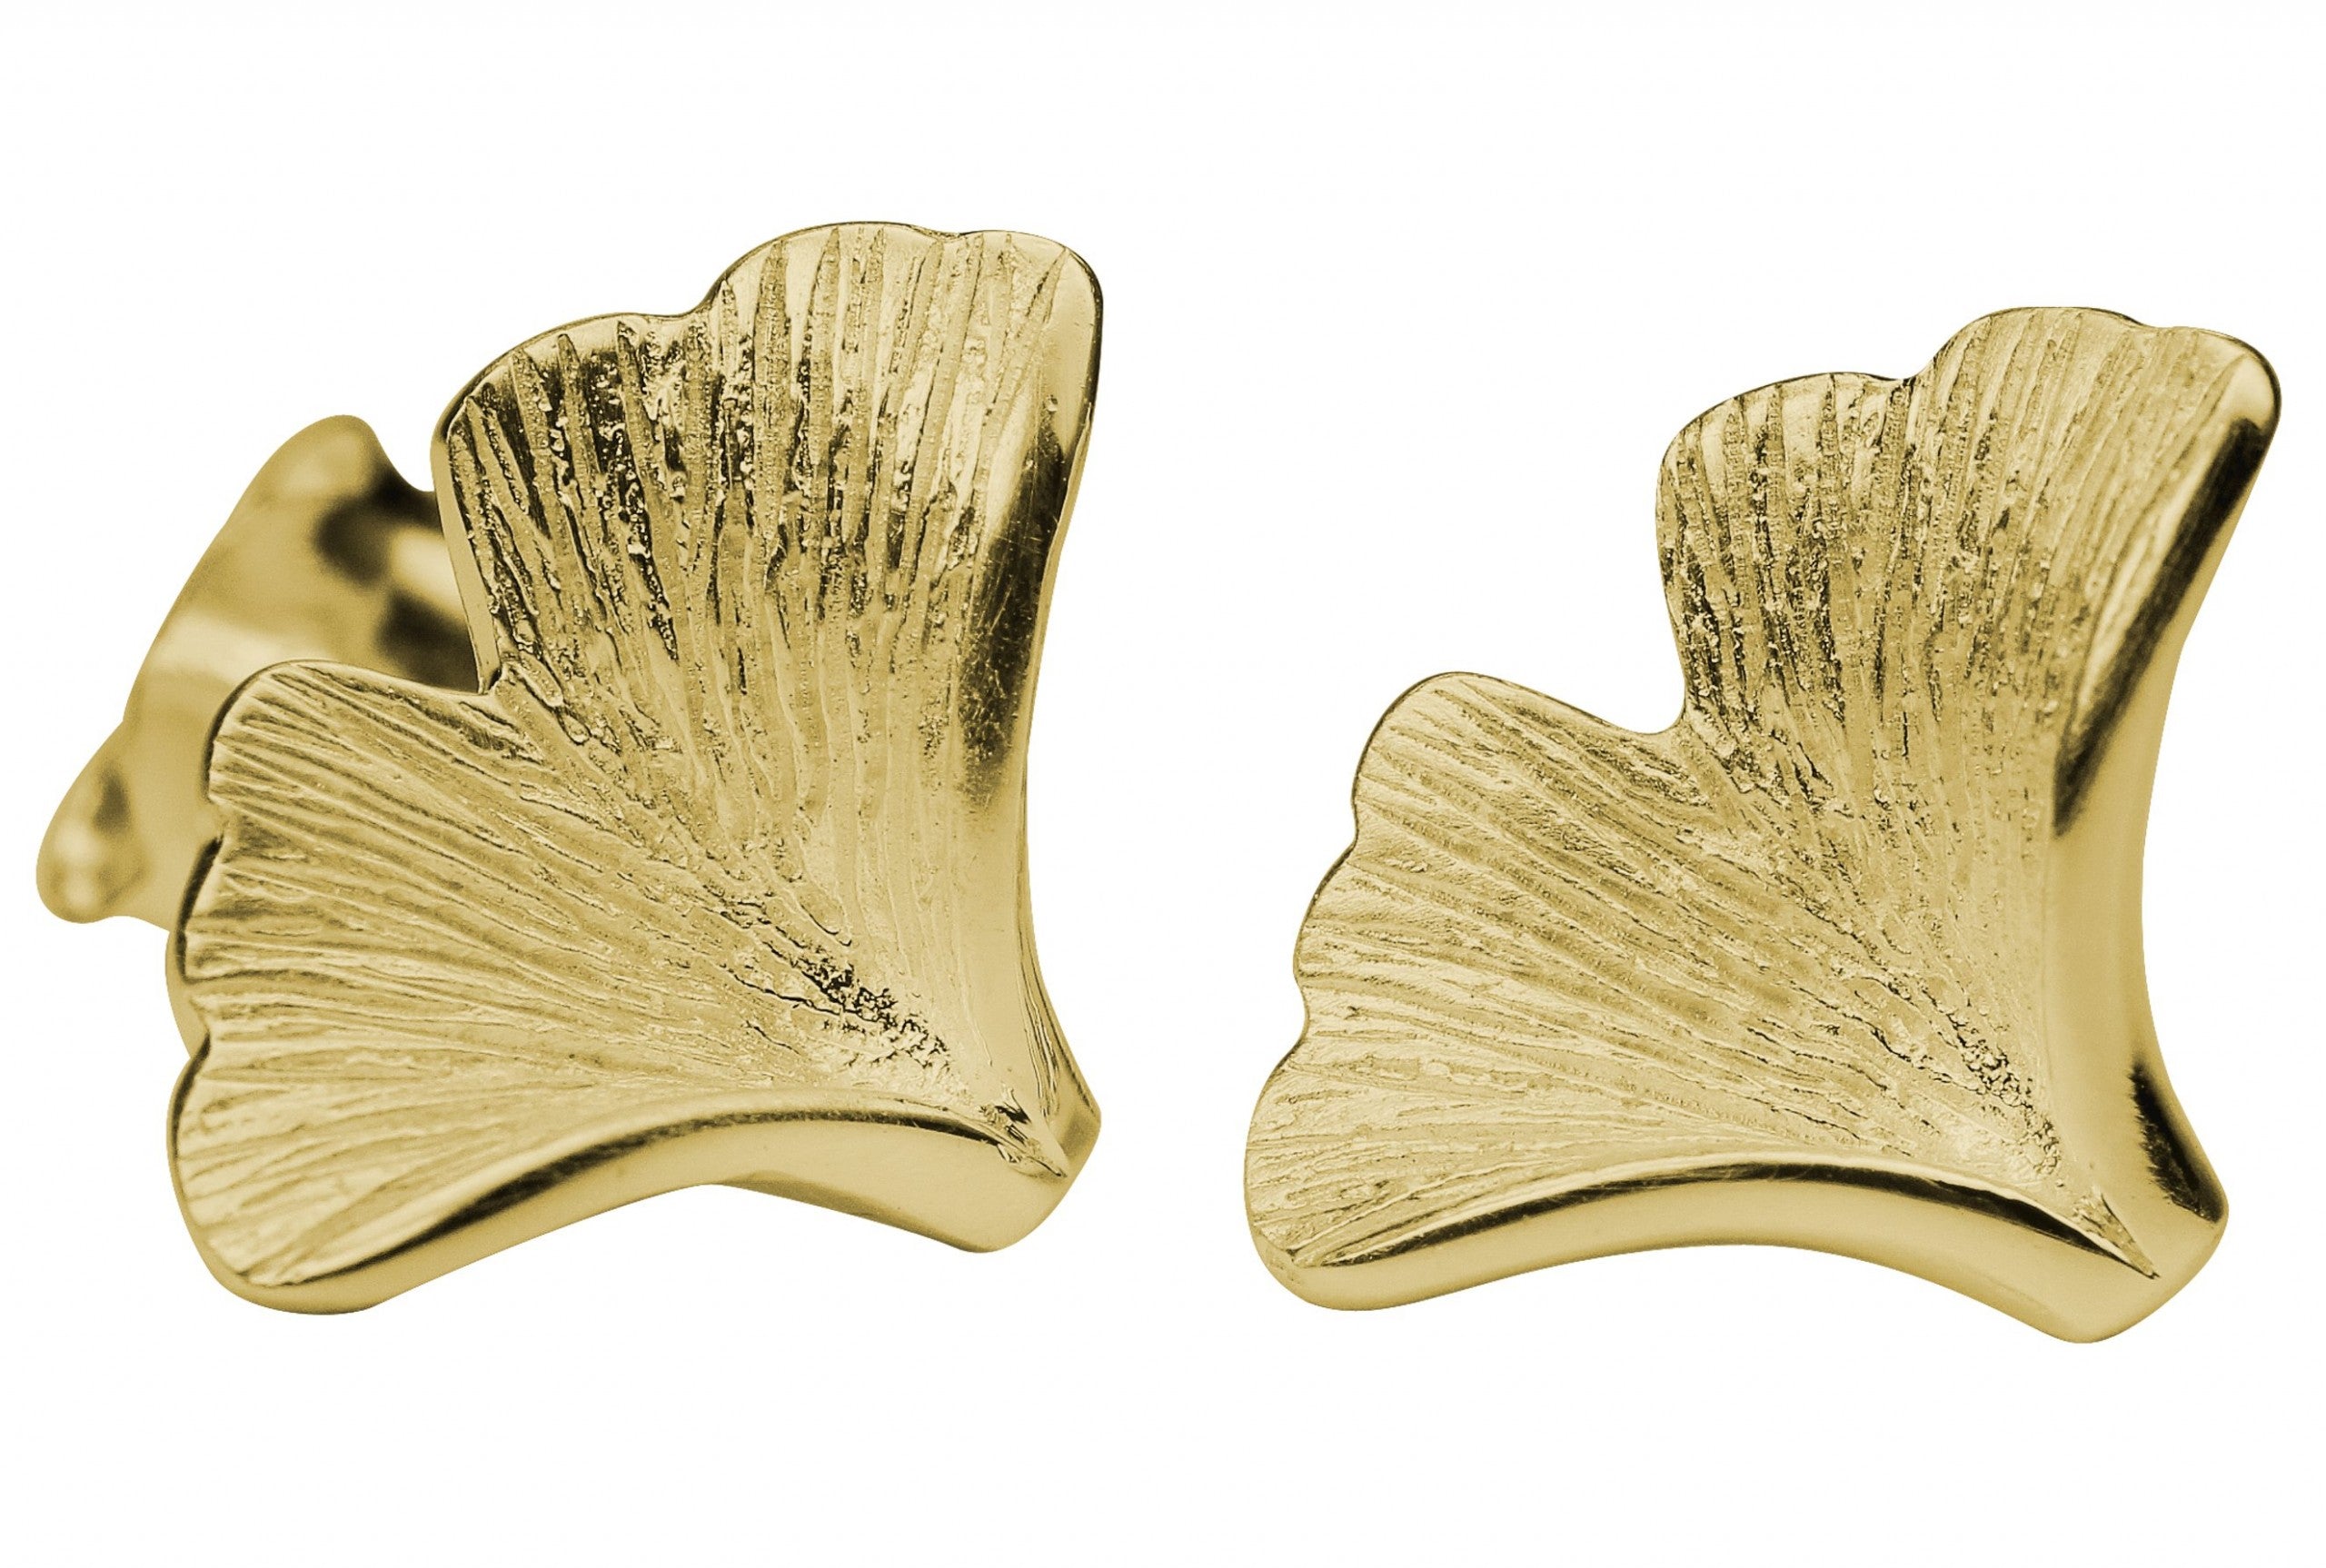 Ohrstecker aus Silber für Damen in Form eines Gingko Blattes mit fein mattierter und vergoldeter Oberfläche.